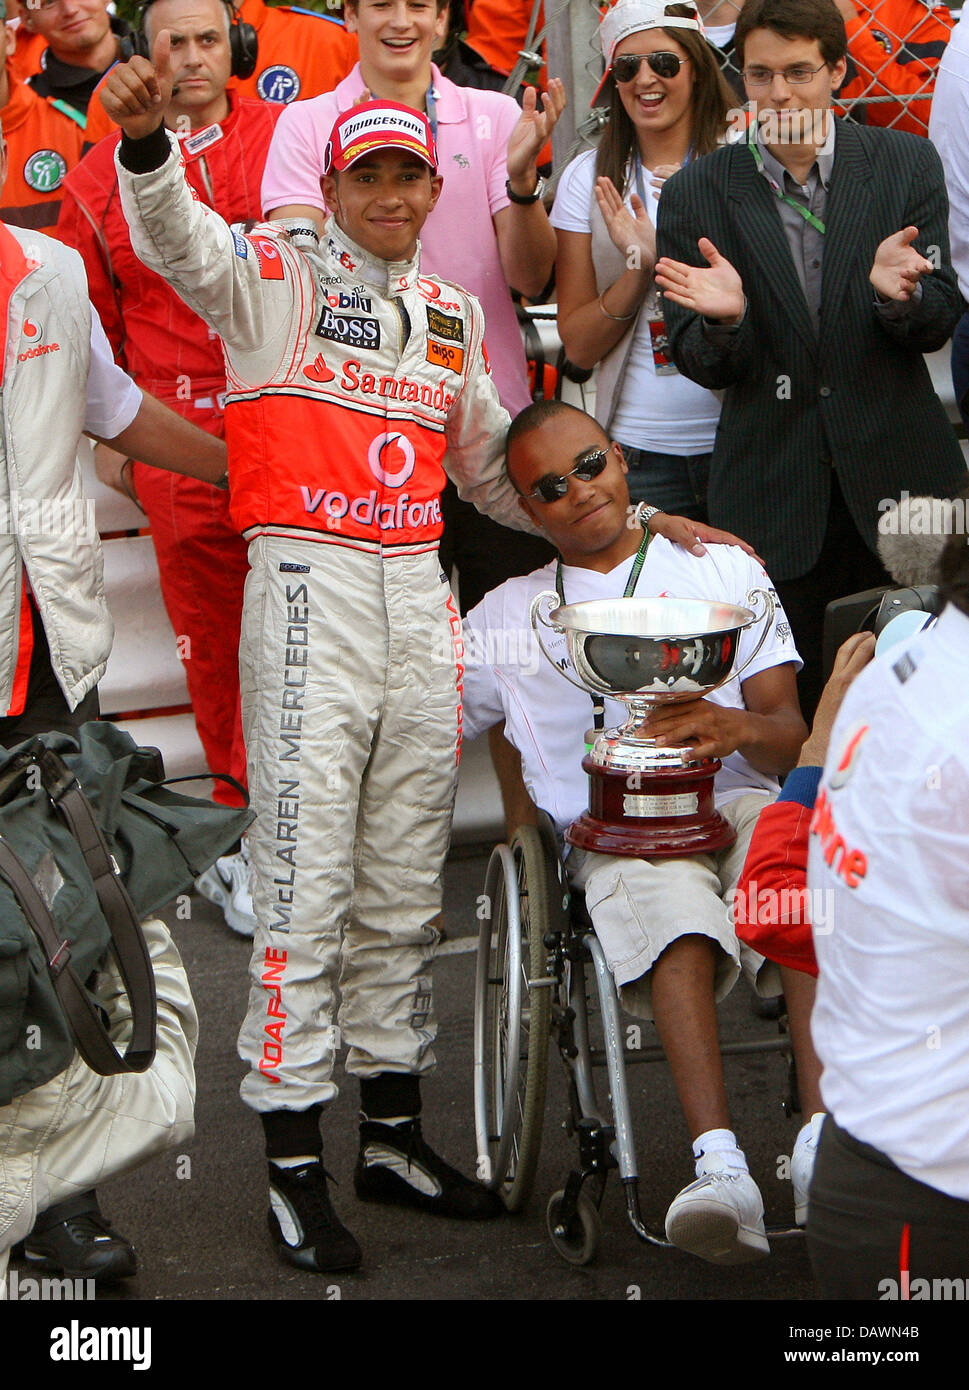 British pilota di Formula Uno Lewis Hamilton della McLaren Mercedes e suo fratello Nicola (R) festeggiare il secondo posto dopo il Gran Premio di Monaco a Montecarlo, Monaco, domenica 27 maggio 2007. Alonso ha vinto davanti a Hamilton. Foto: Jens BUETTNER Foto Stock